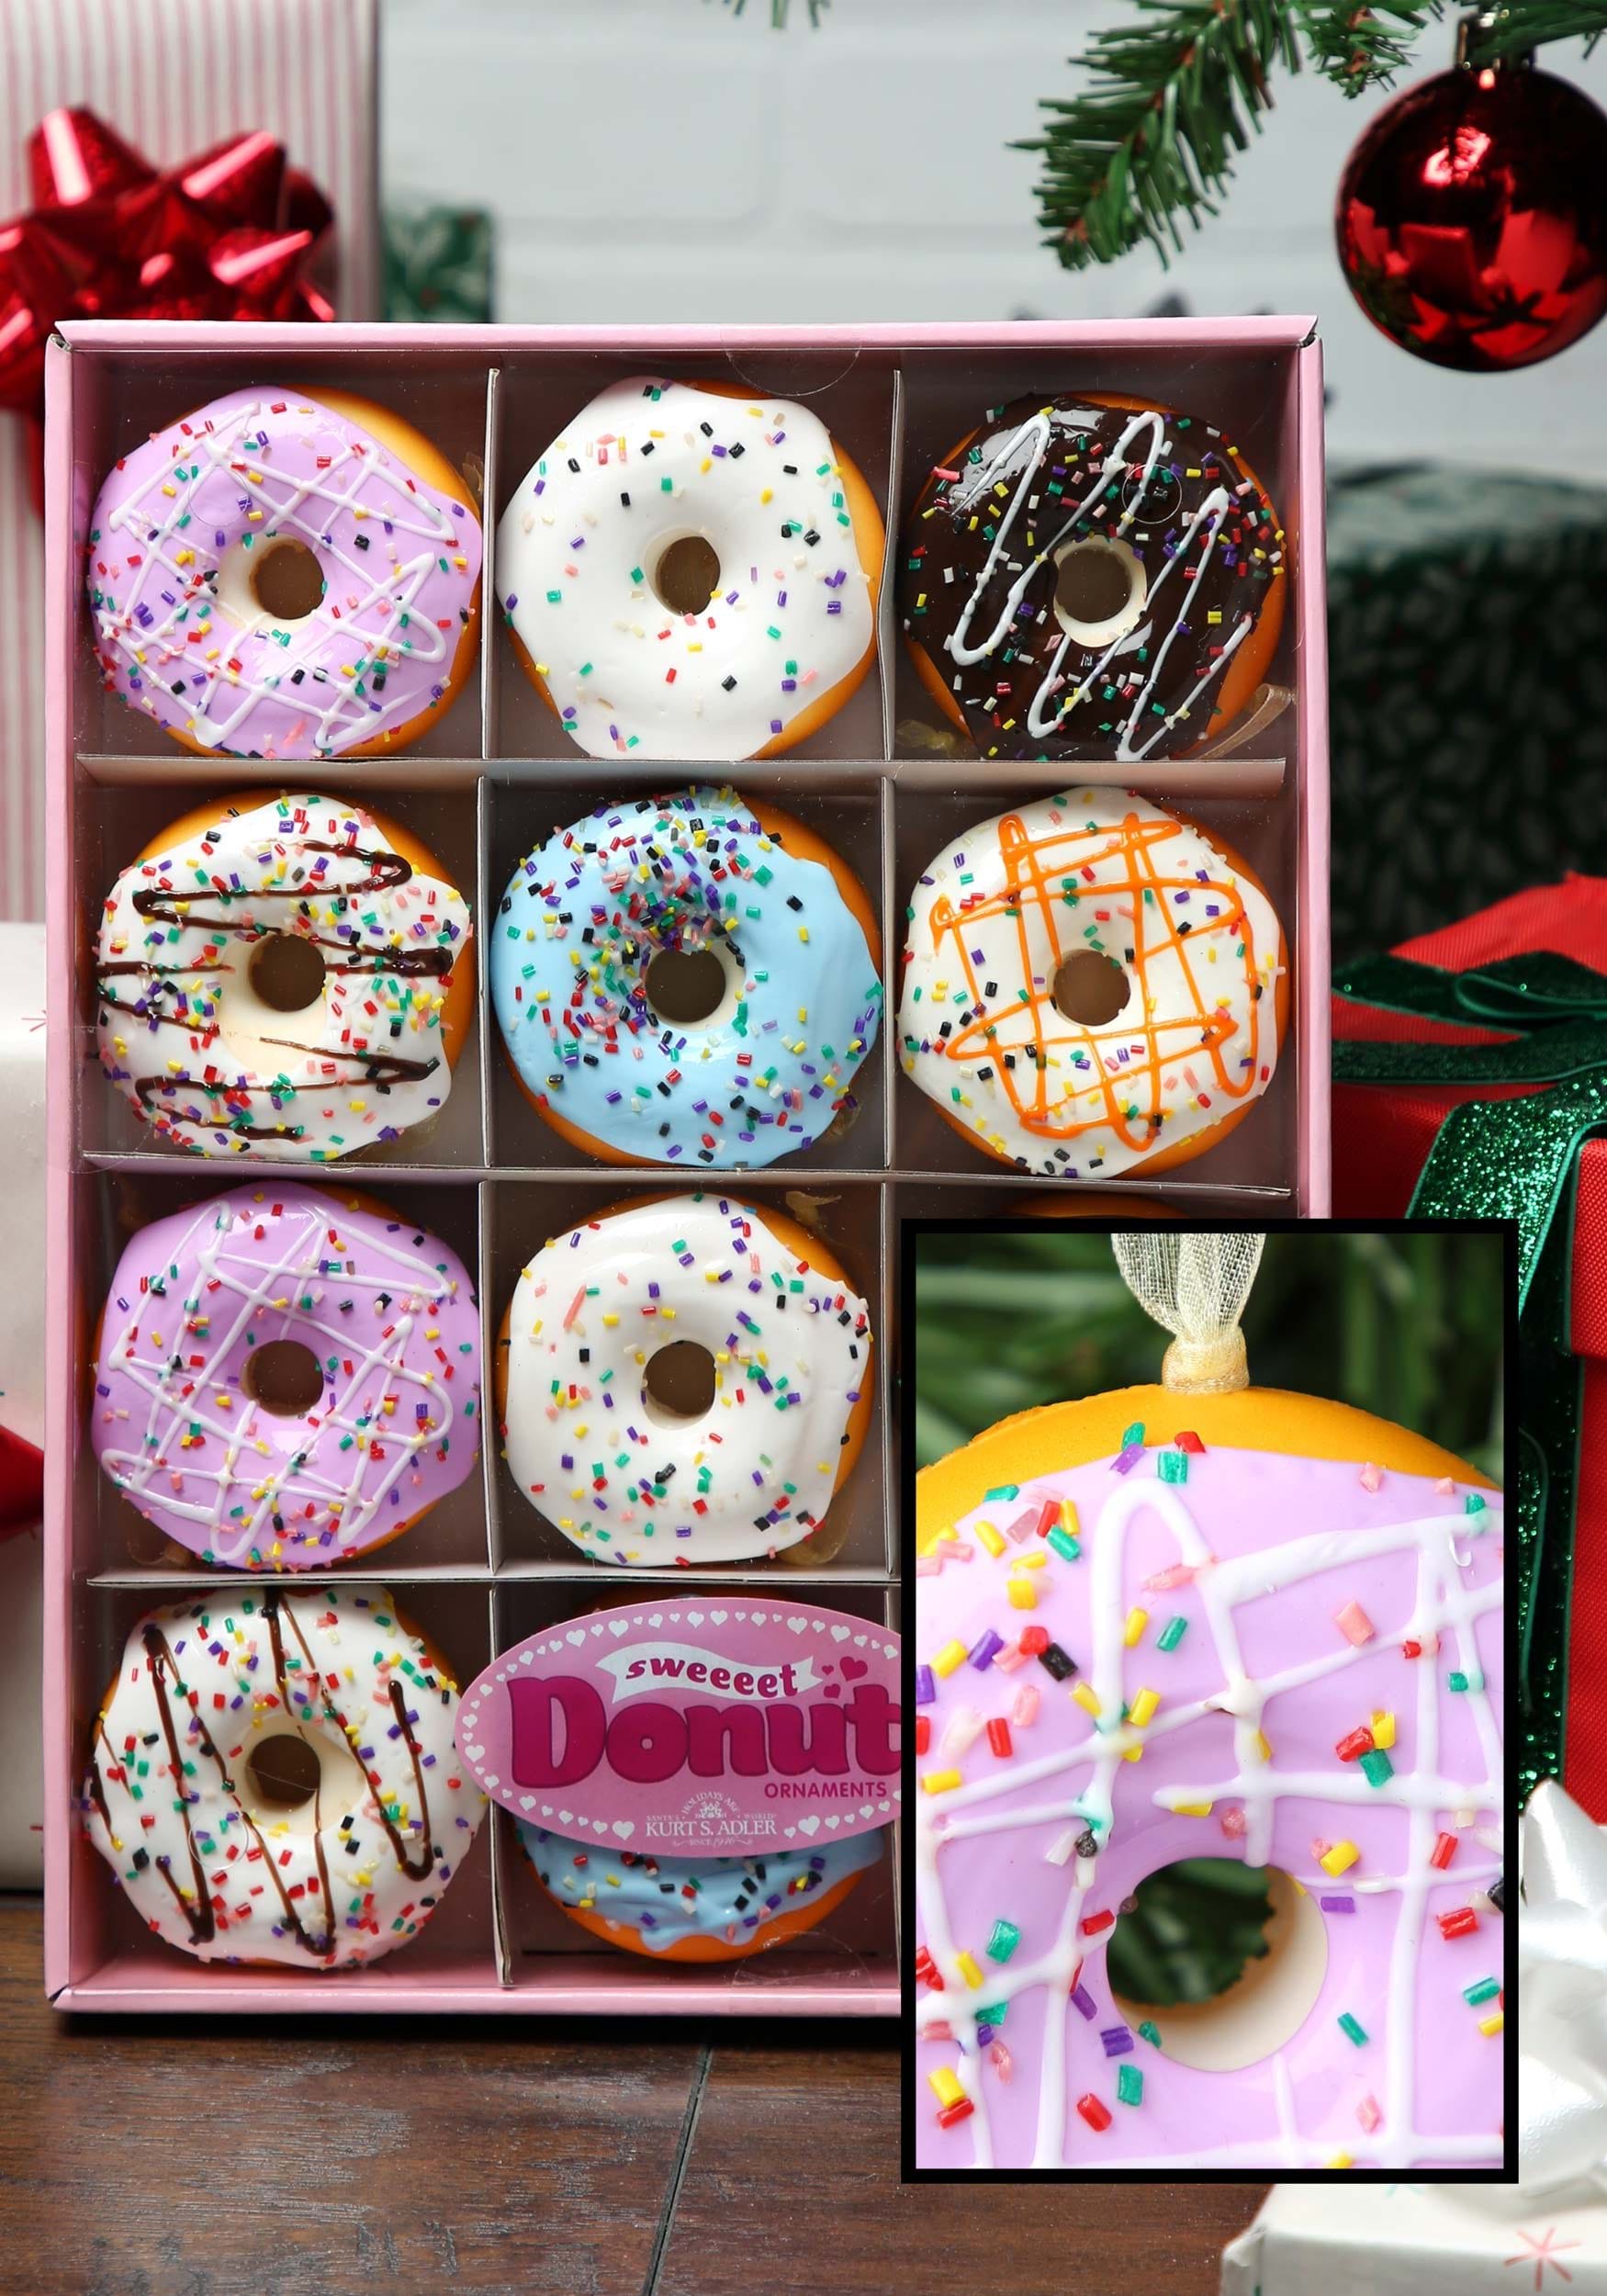 Donut en miniatura 12 juego de piezas de adorno Multicolor Colombia